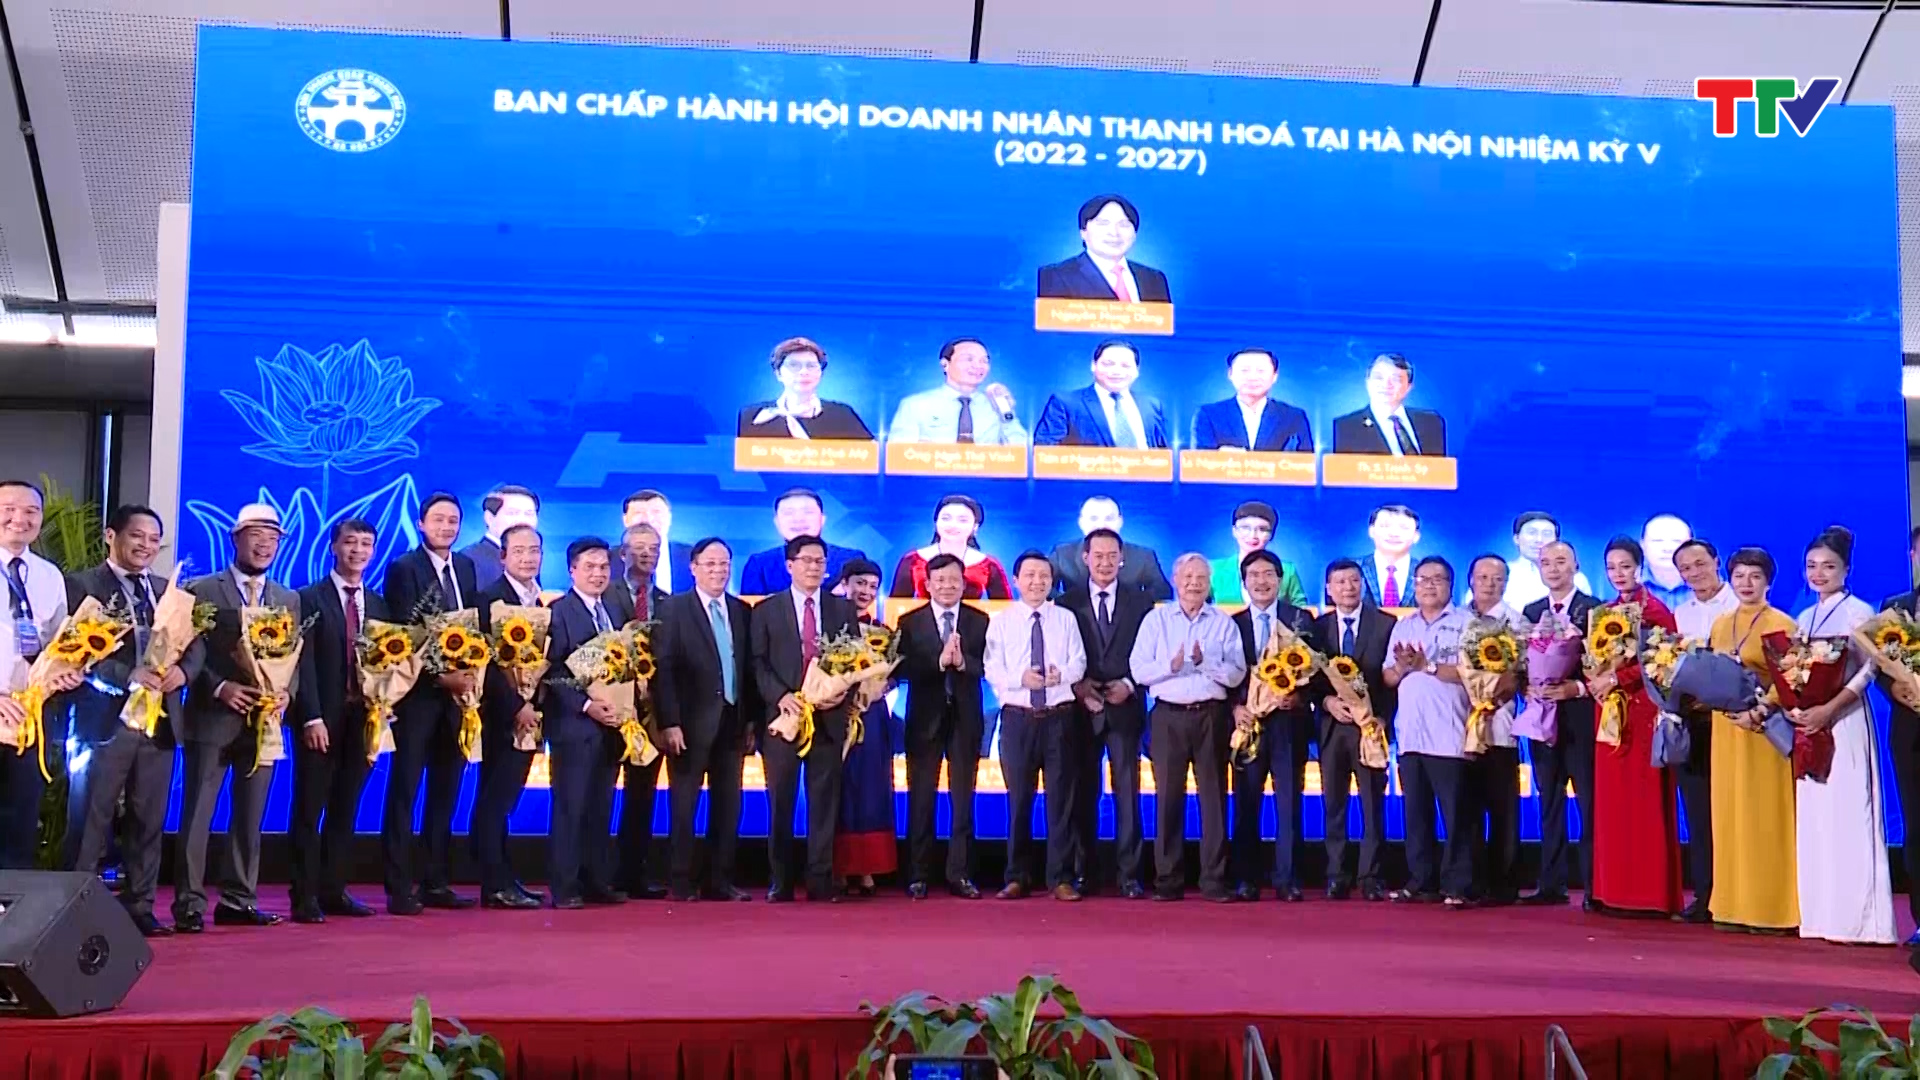 Đại hội Hội doanh nhân Thanh Hóa tại Hà Nội - Ảnh 5.